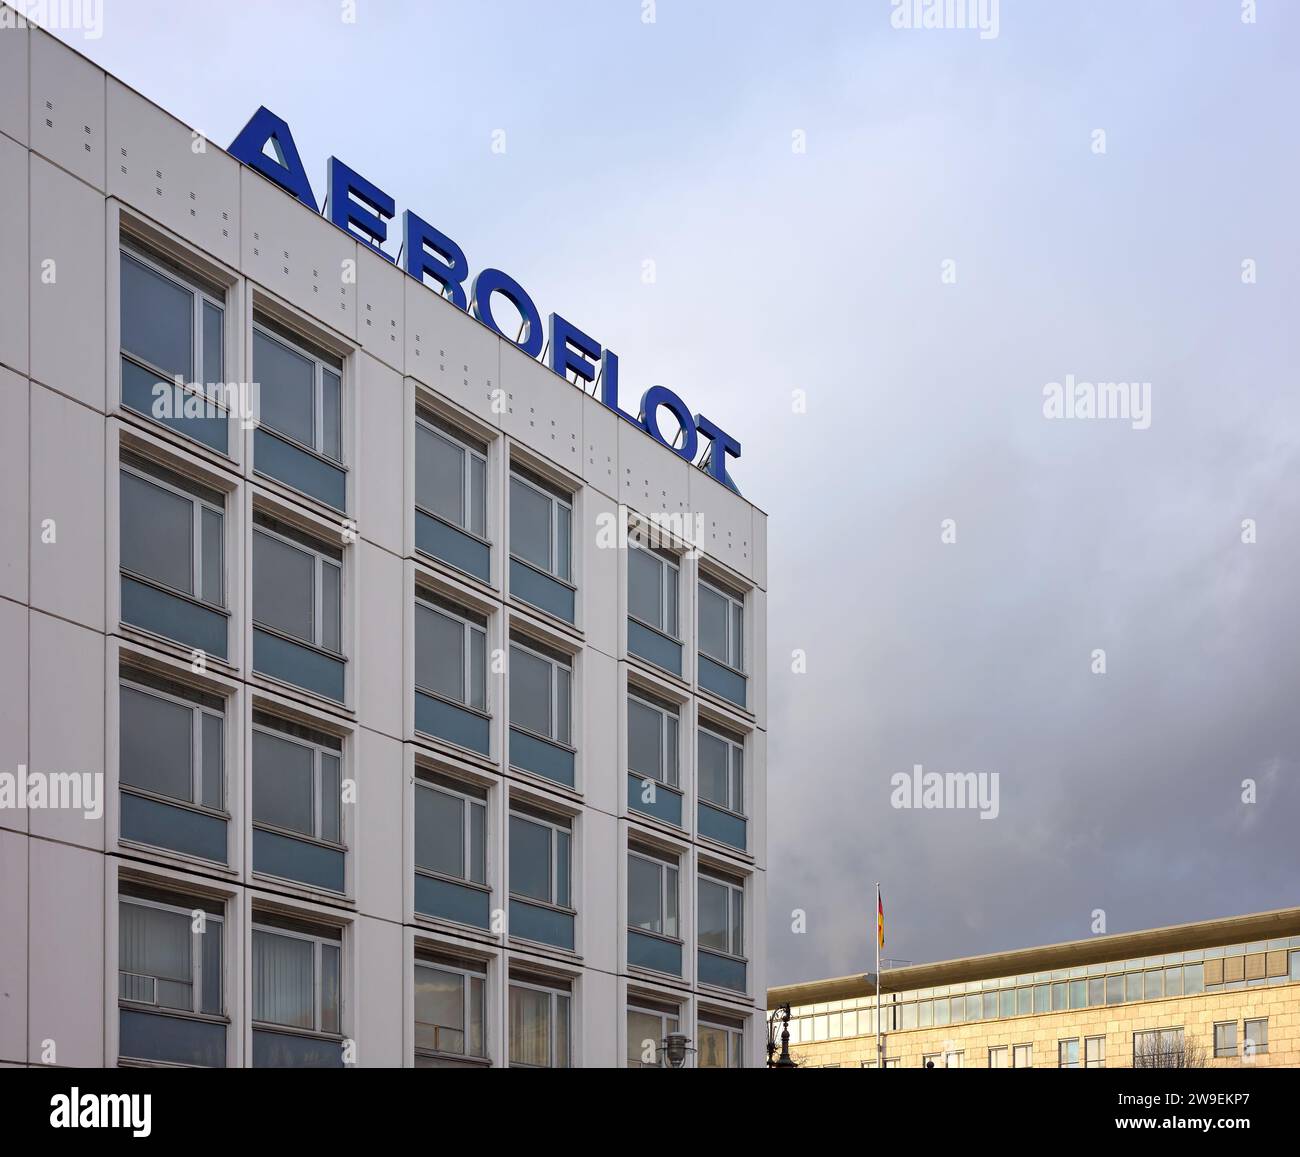 Berlin - 12. Dezember 2023: Schild der Aeroflot Russian Airlines auf dem Dach eines Gebäudes. Stockfoto